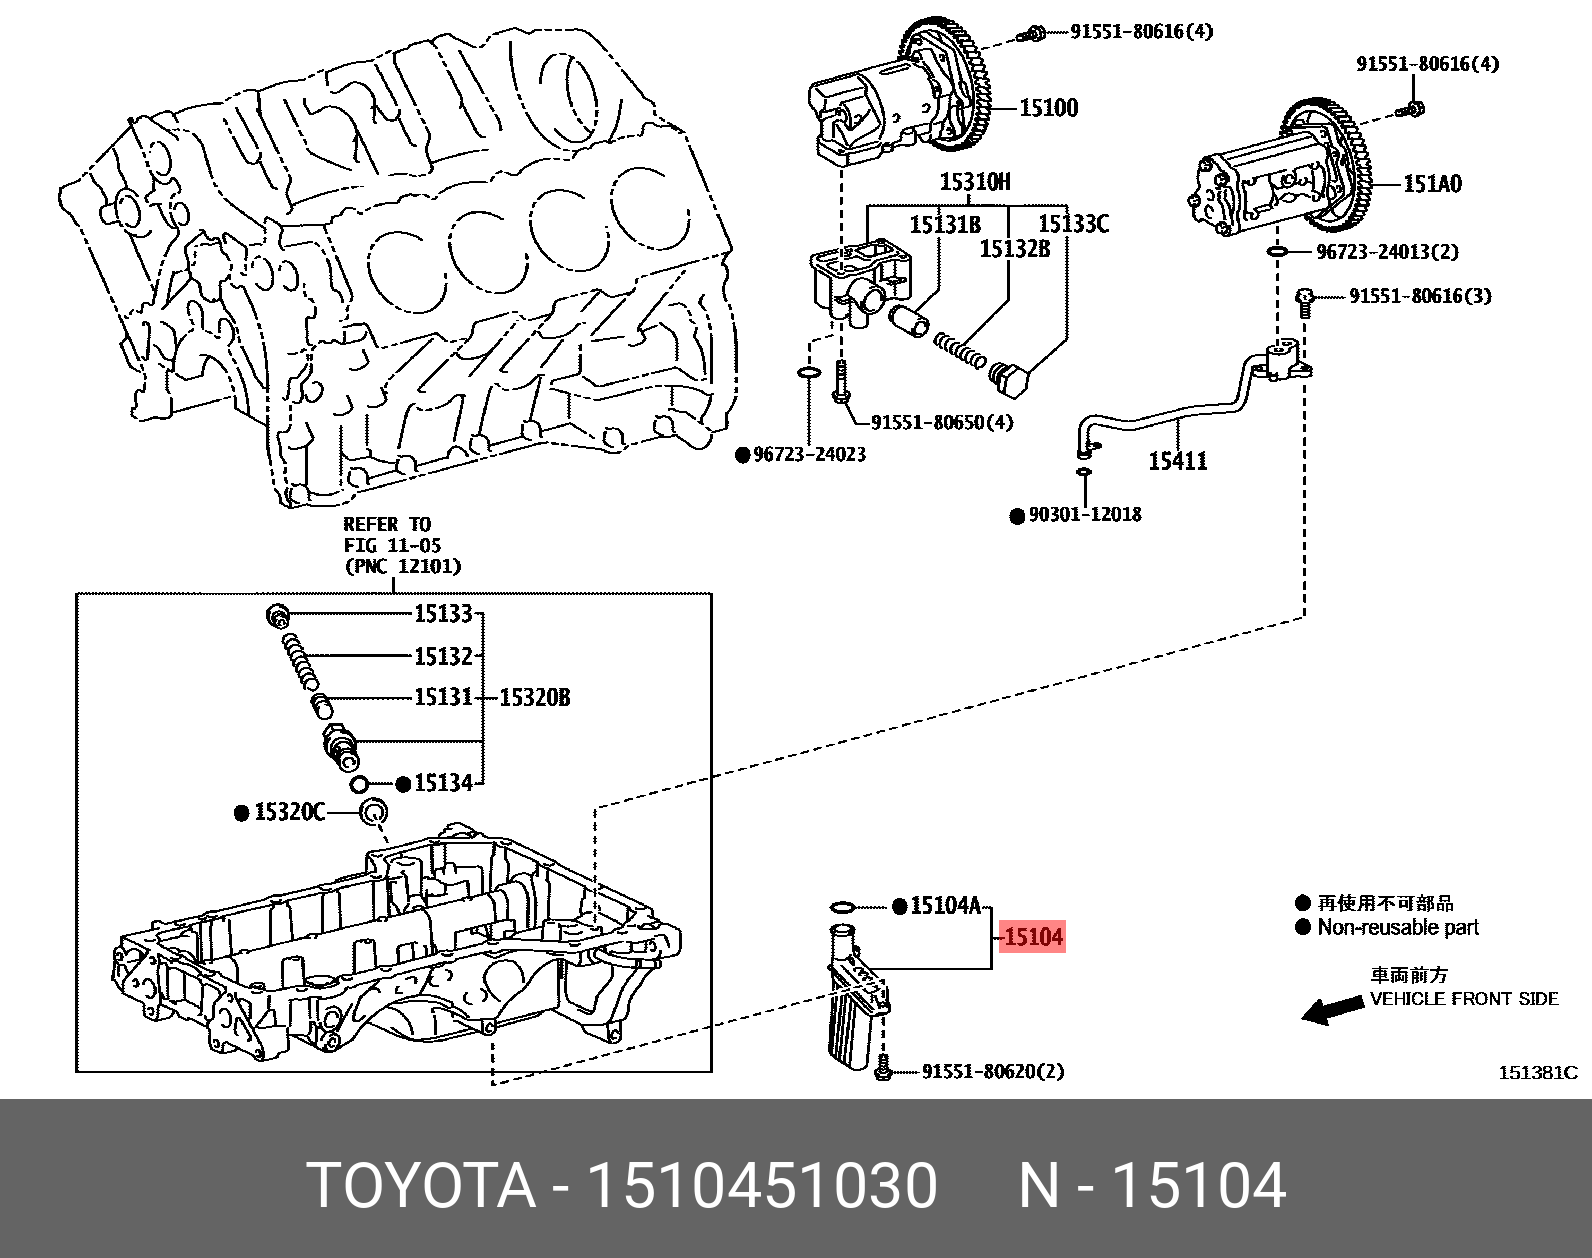 Фильтр системы смазки - Toyota 15104-51030